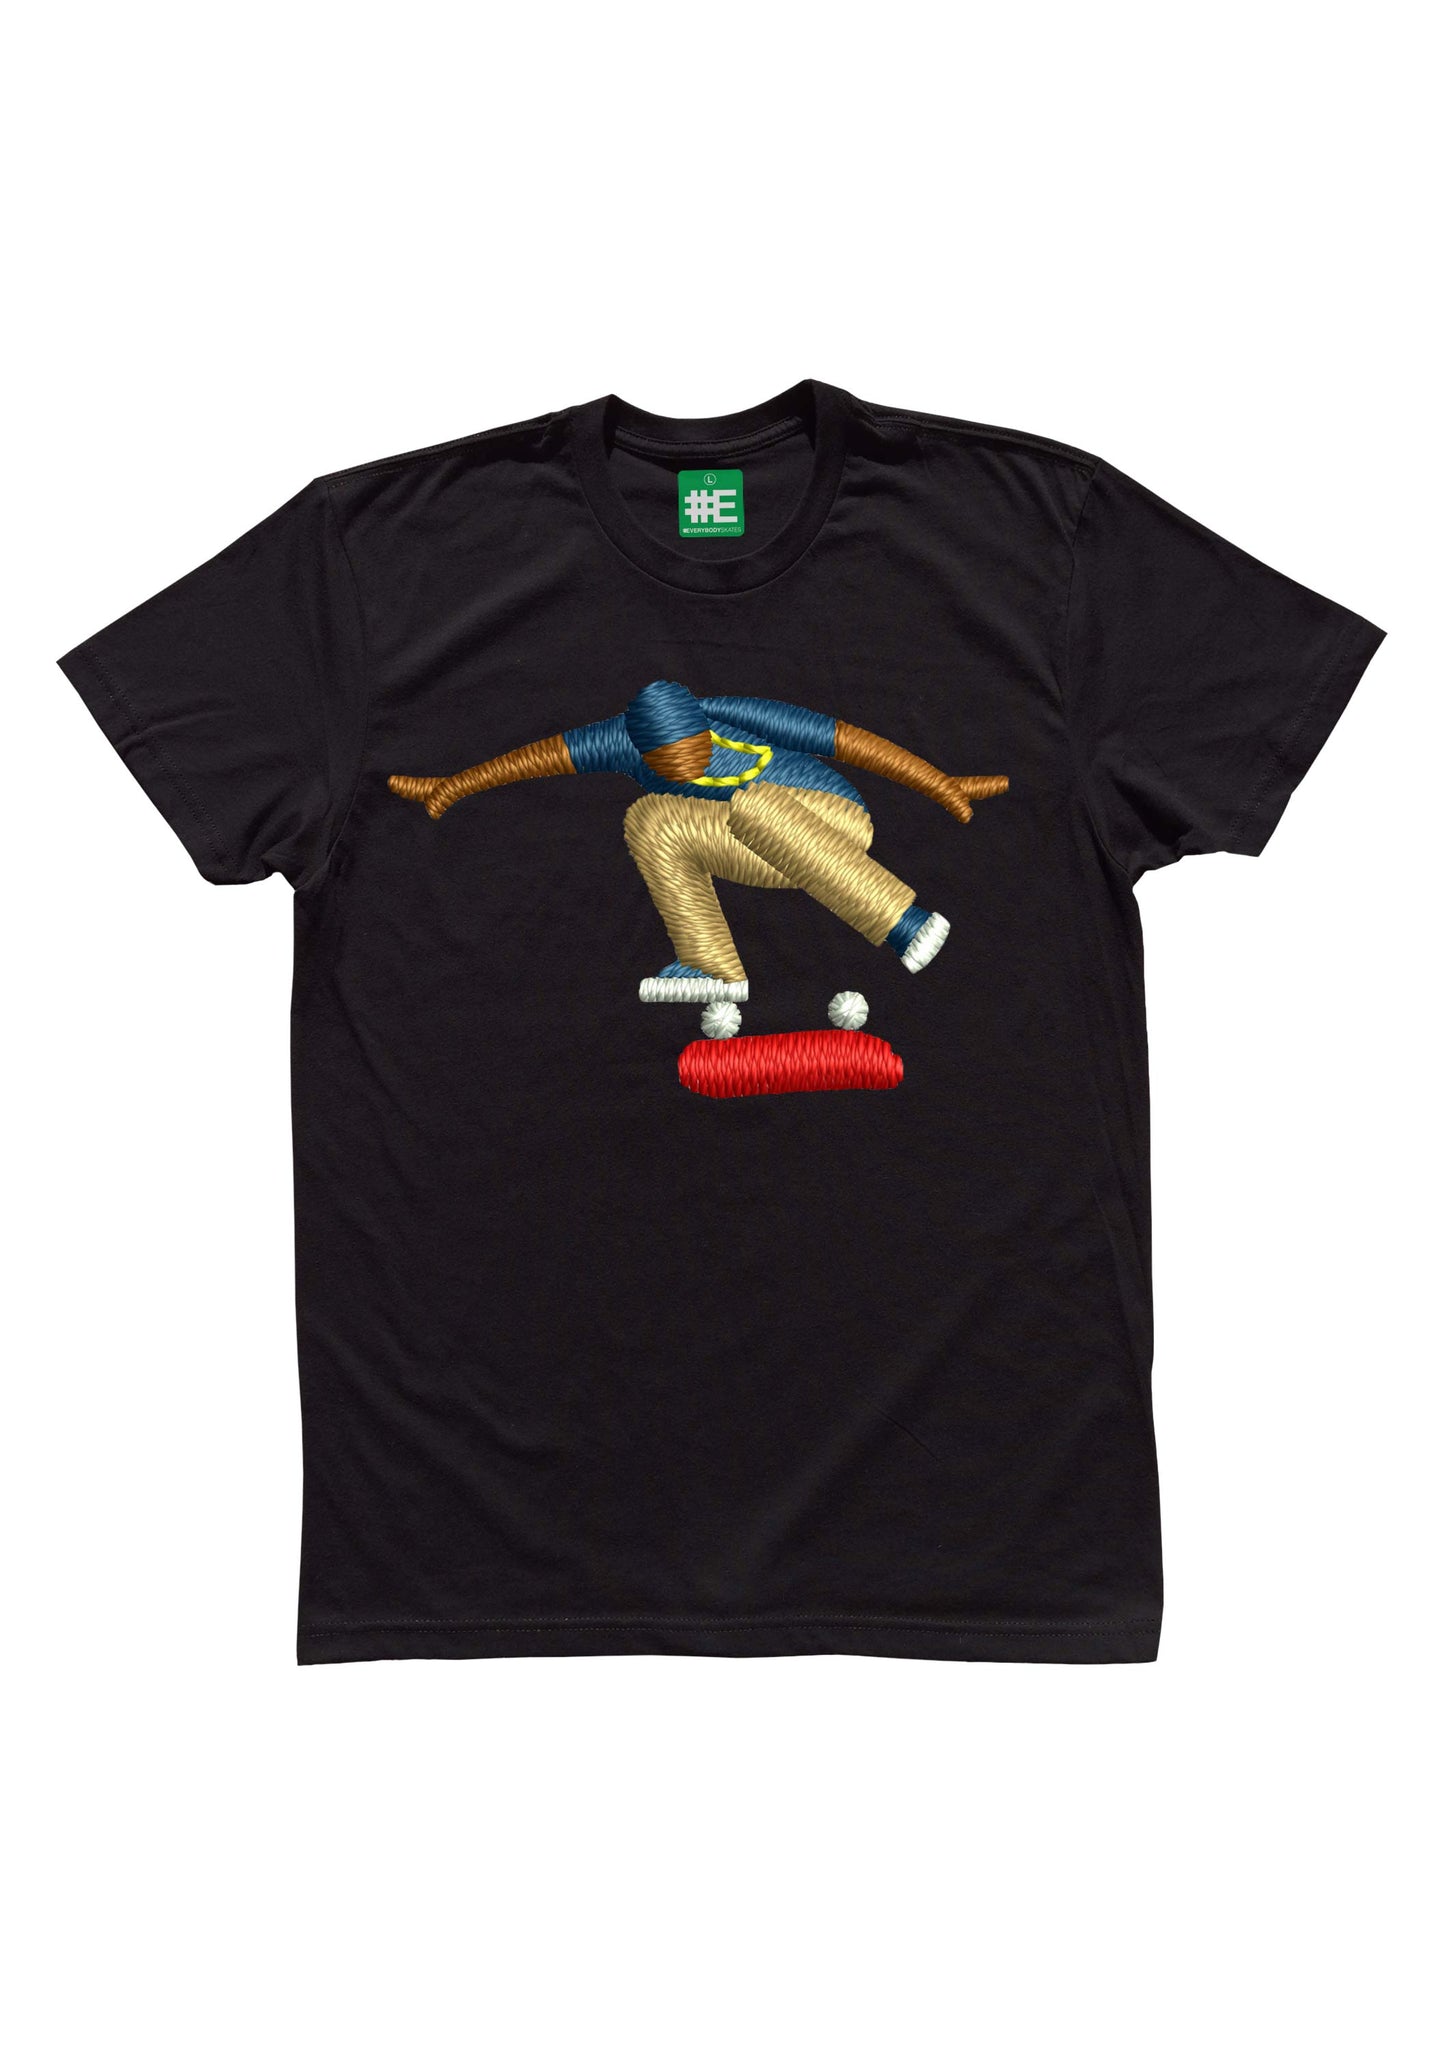 Kickflip Graphic T-shirt